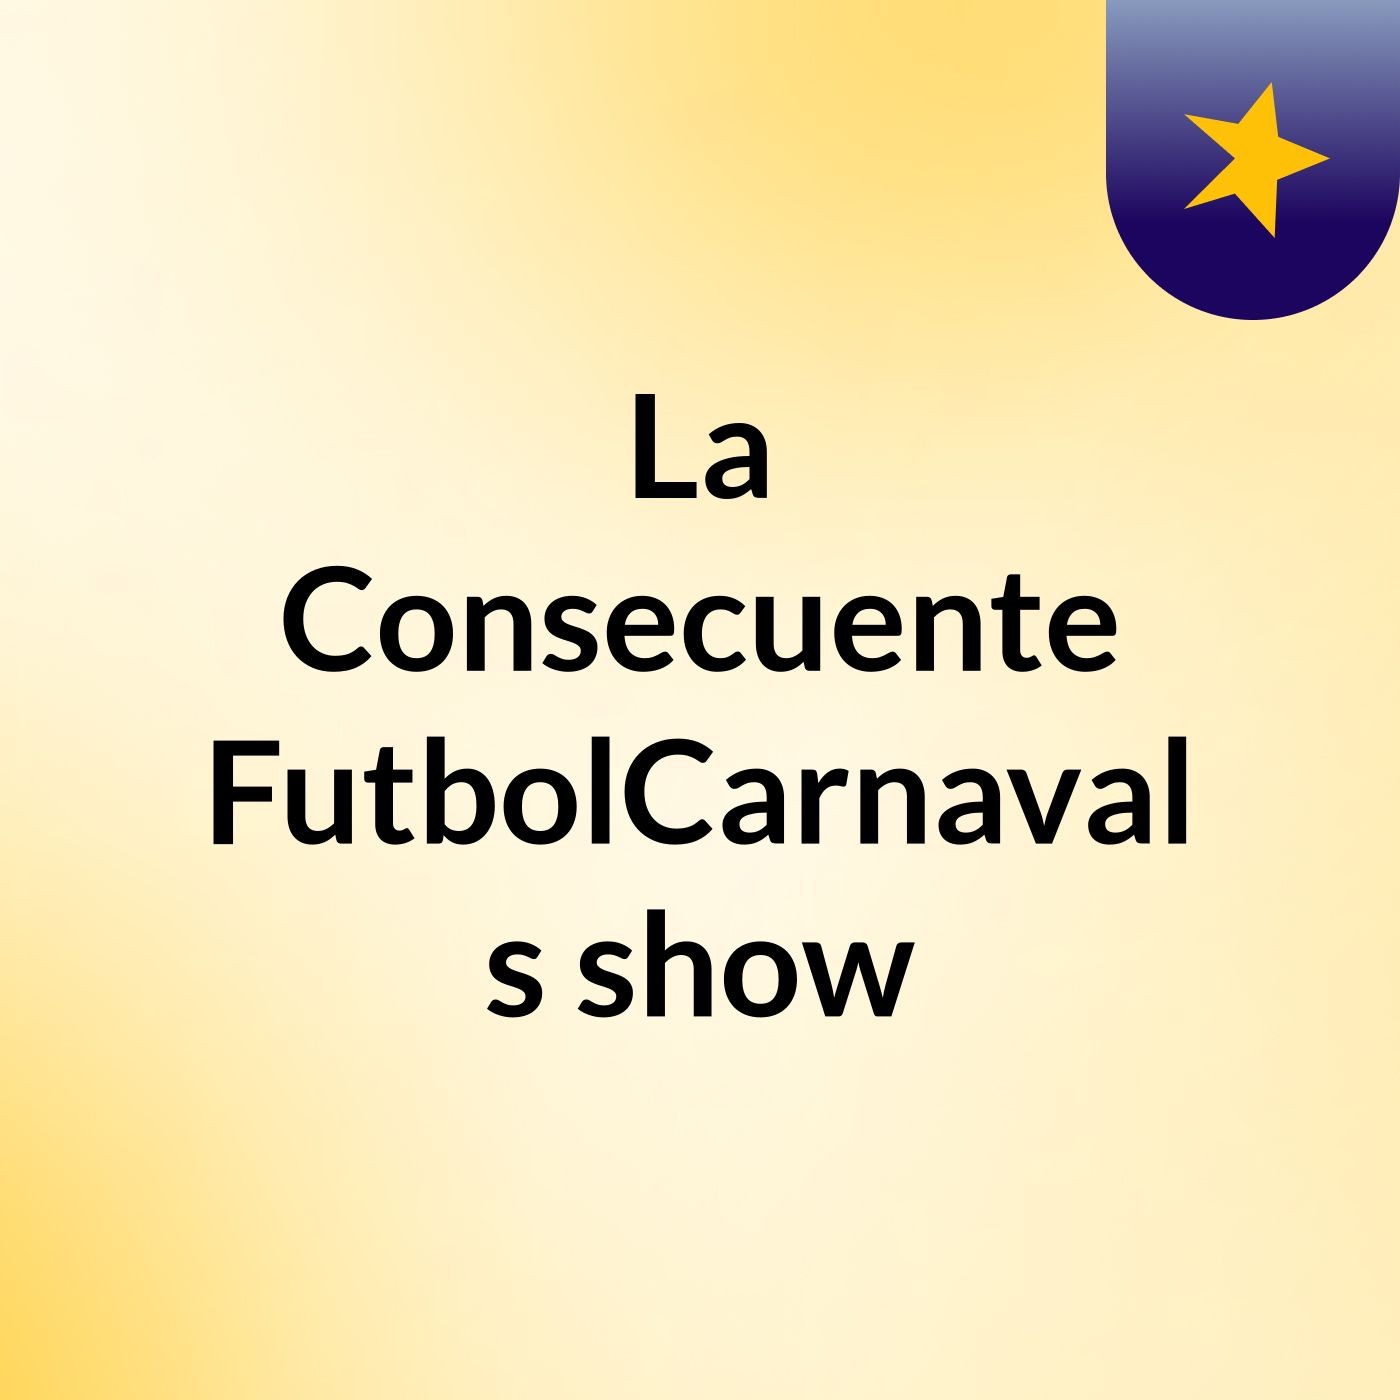 La Consecuente FutbolCarnaval's show